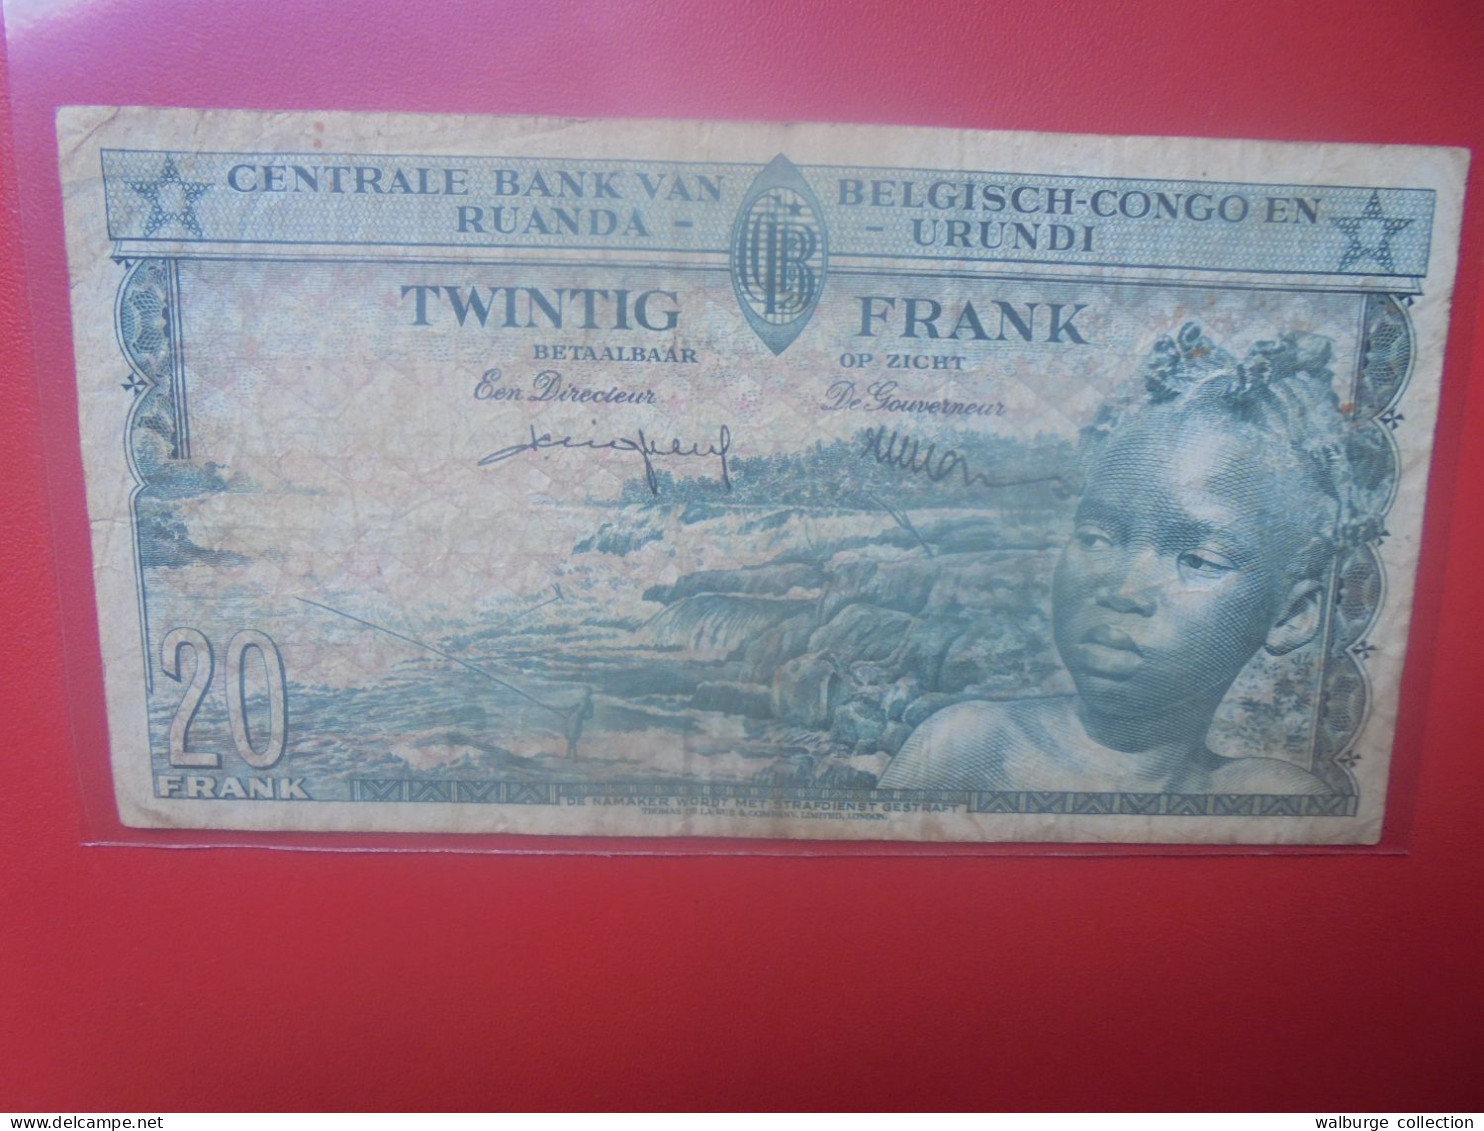 CONGO BELGE 20 FRANCS 1-8-57 Circuler (B.33) - Belgian Congo Bank